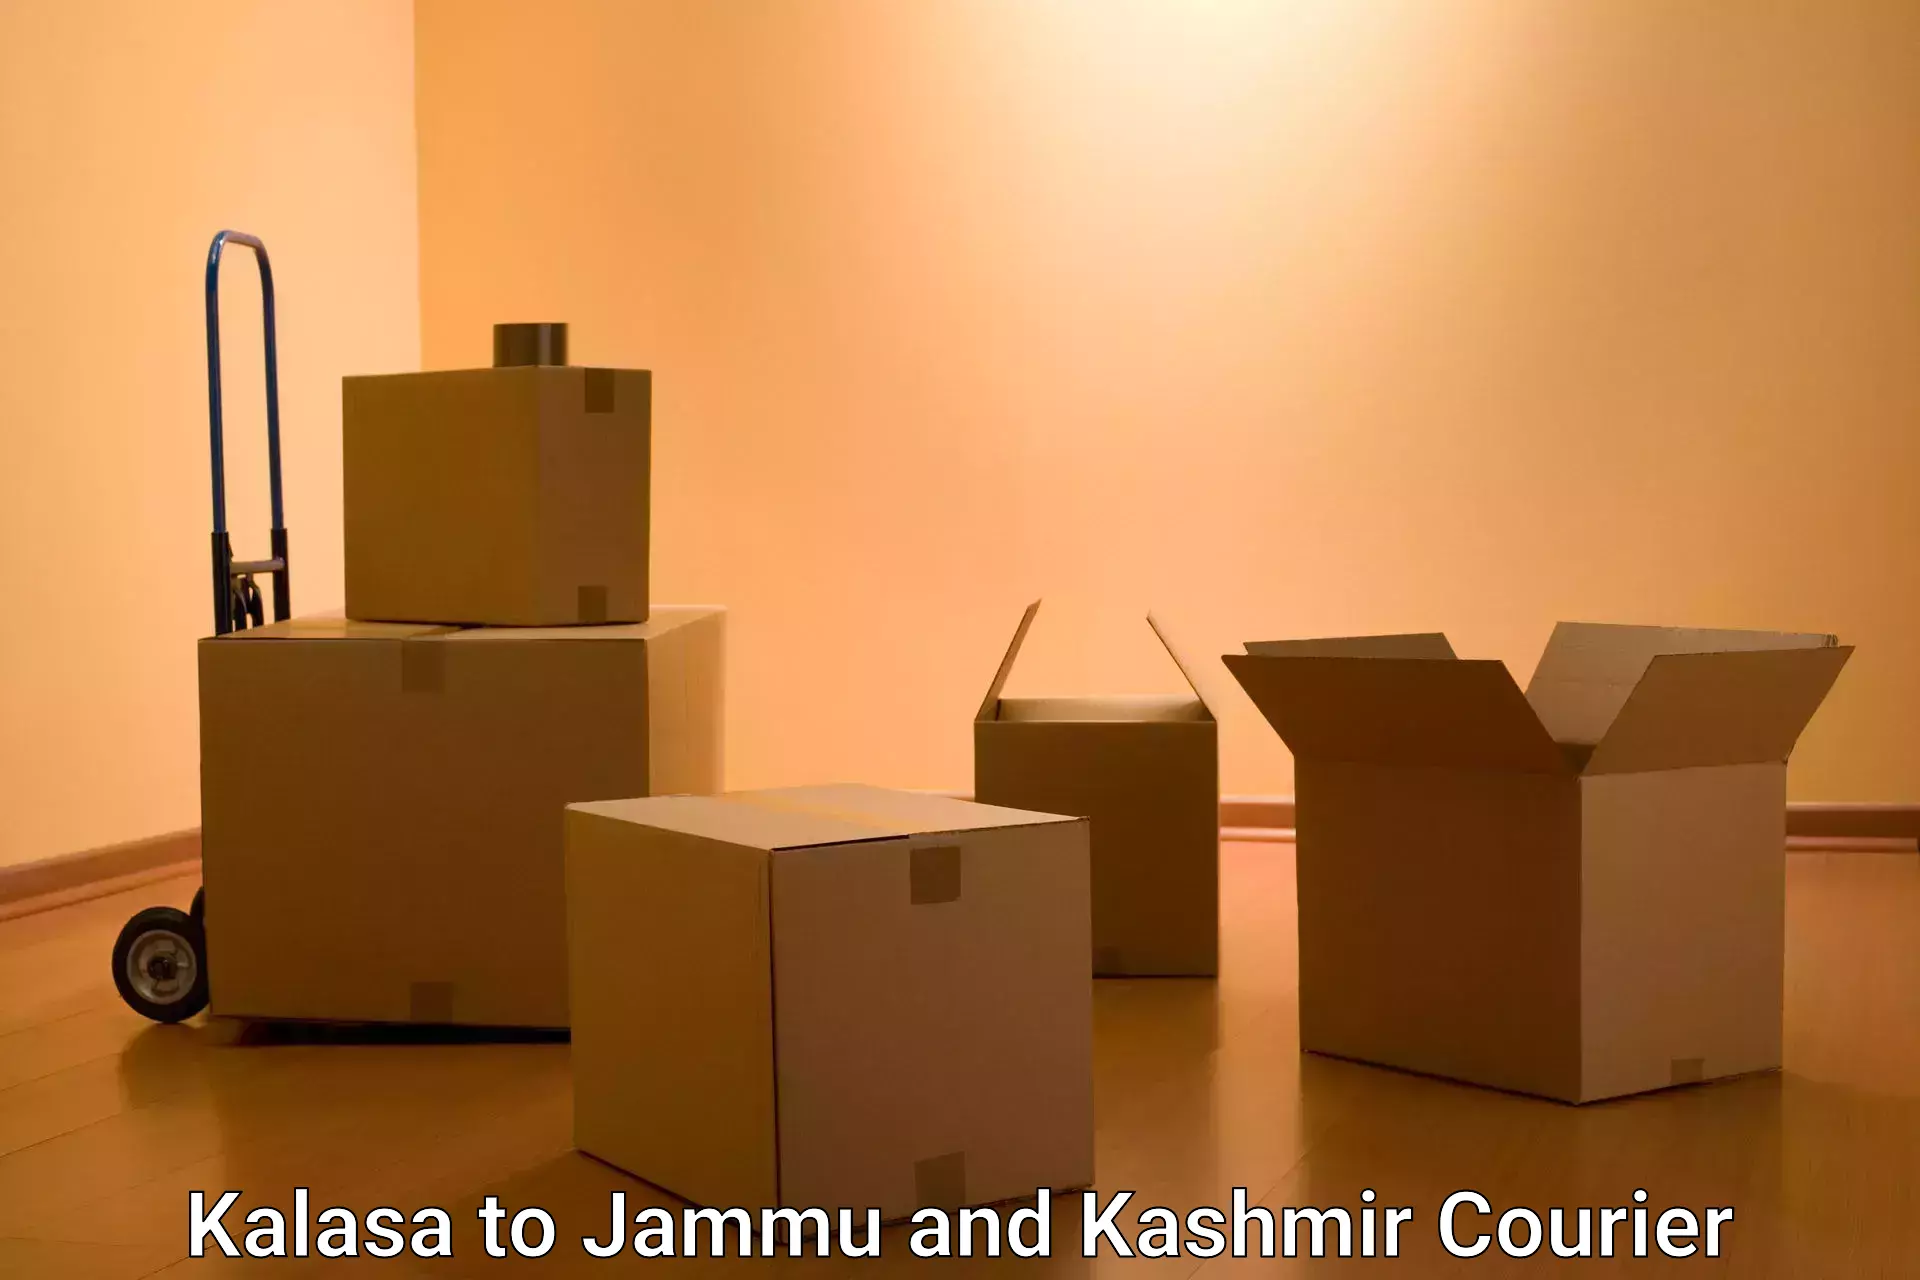 Professional courier services Kalasa to Jammu and Kashmir